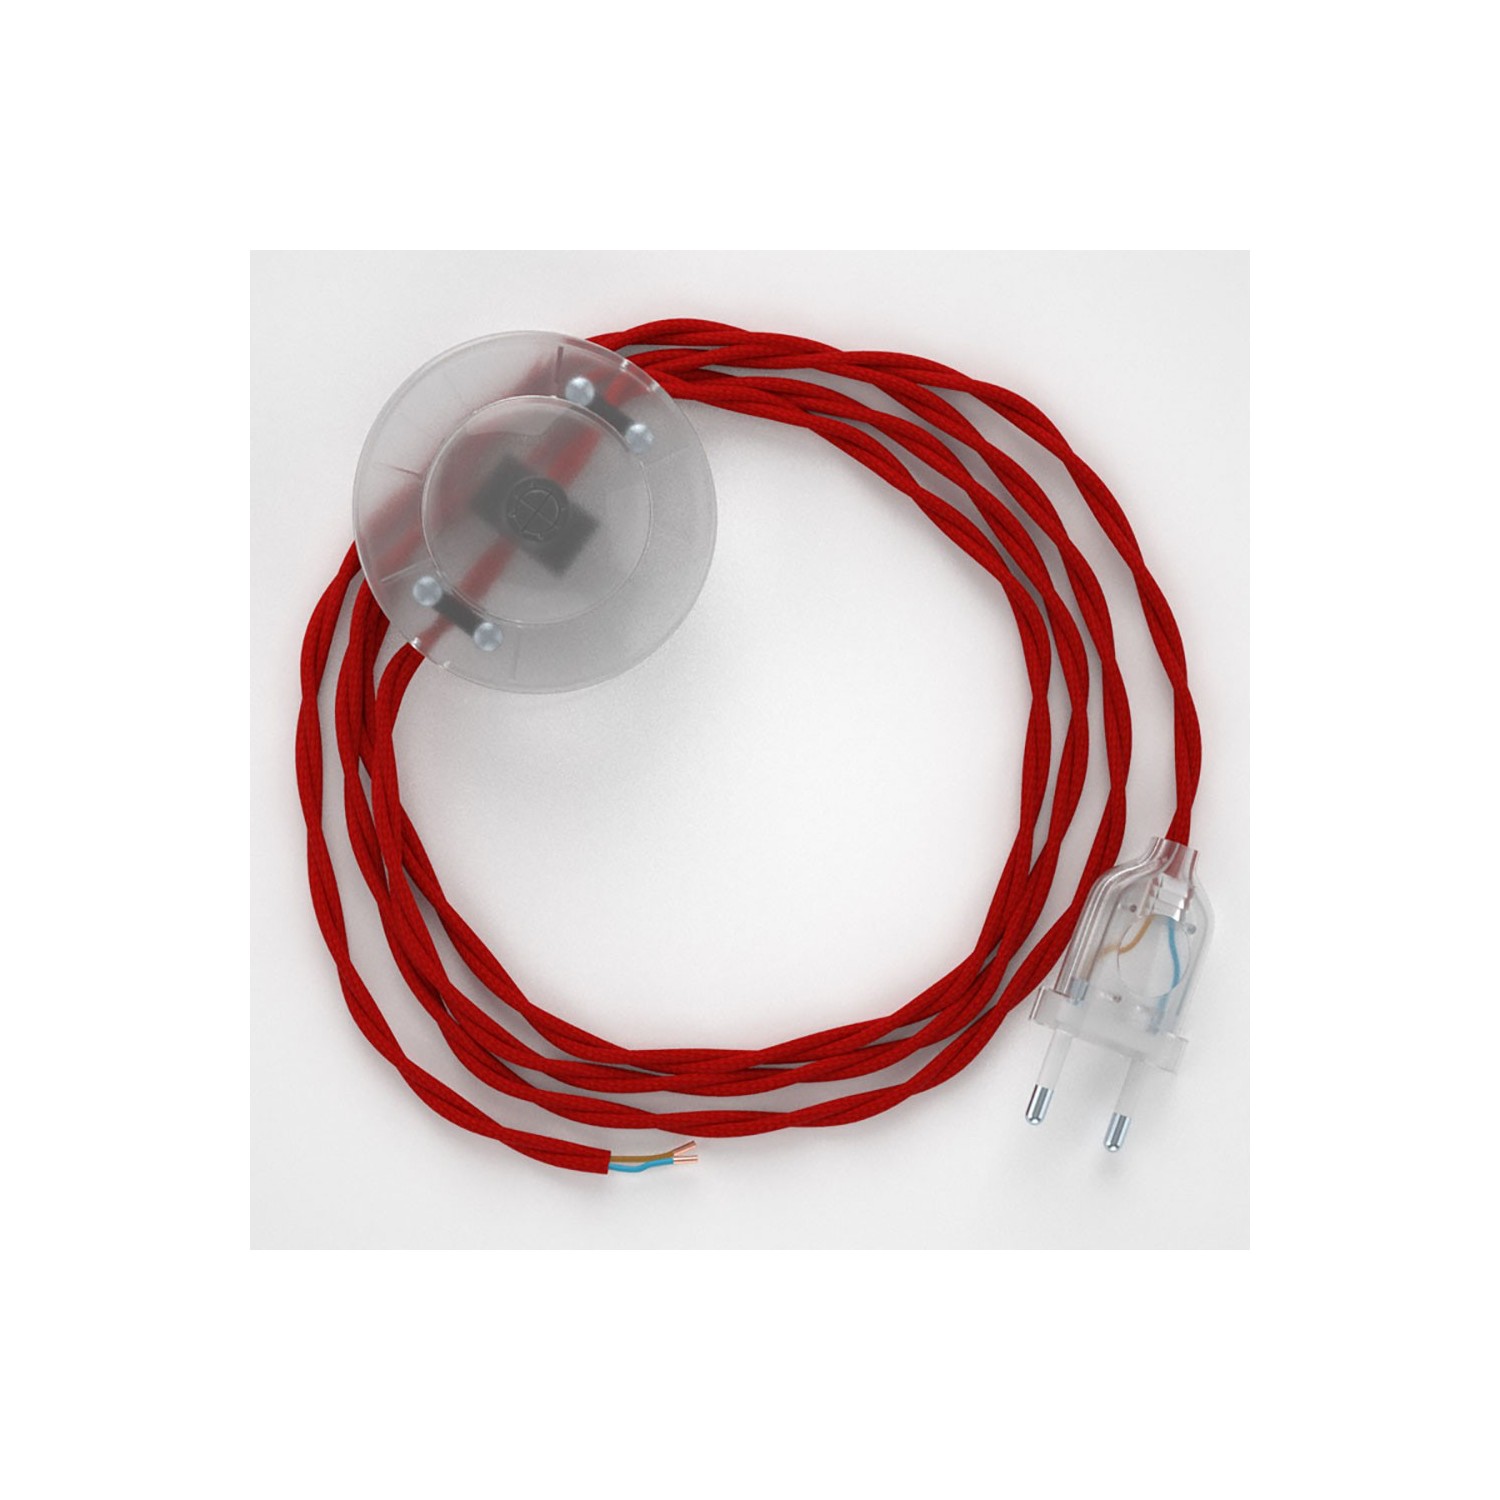 Stehleuchte Anschlussleitung TM09 Rot Seideneffekt 3 m. Wählen Sie aus drei Farben bei Schalter und Stecke.